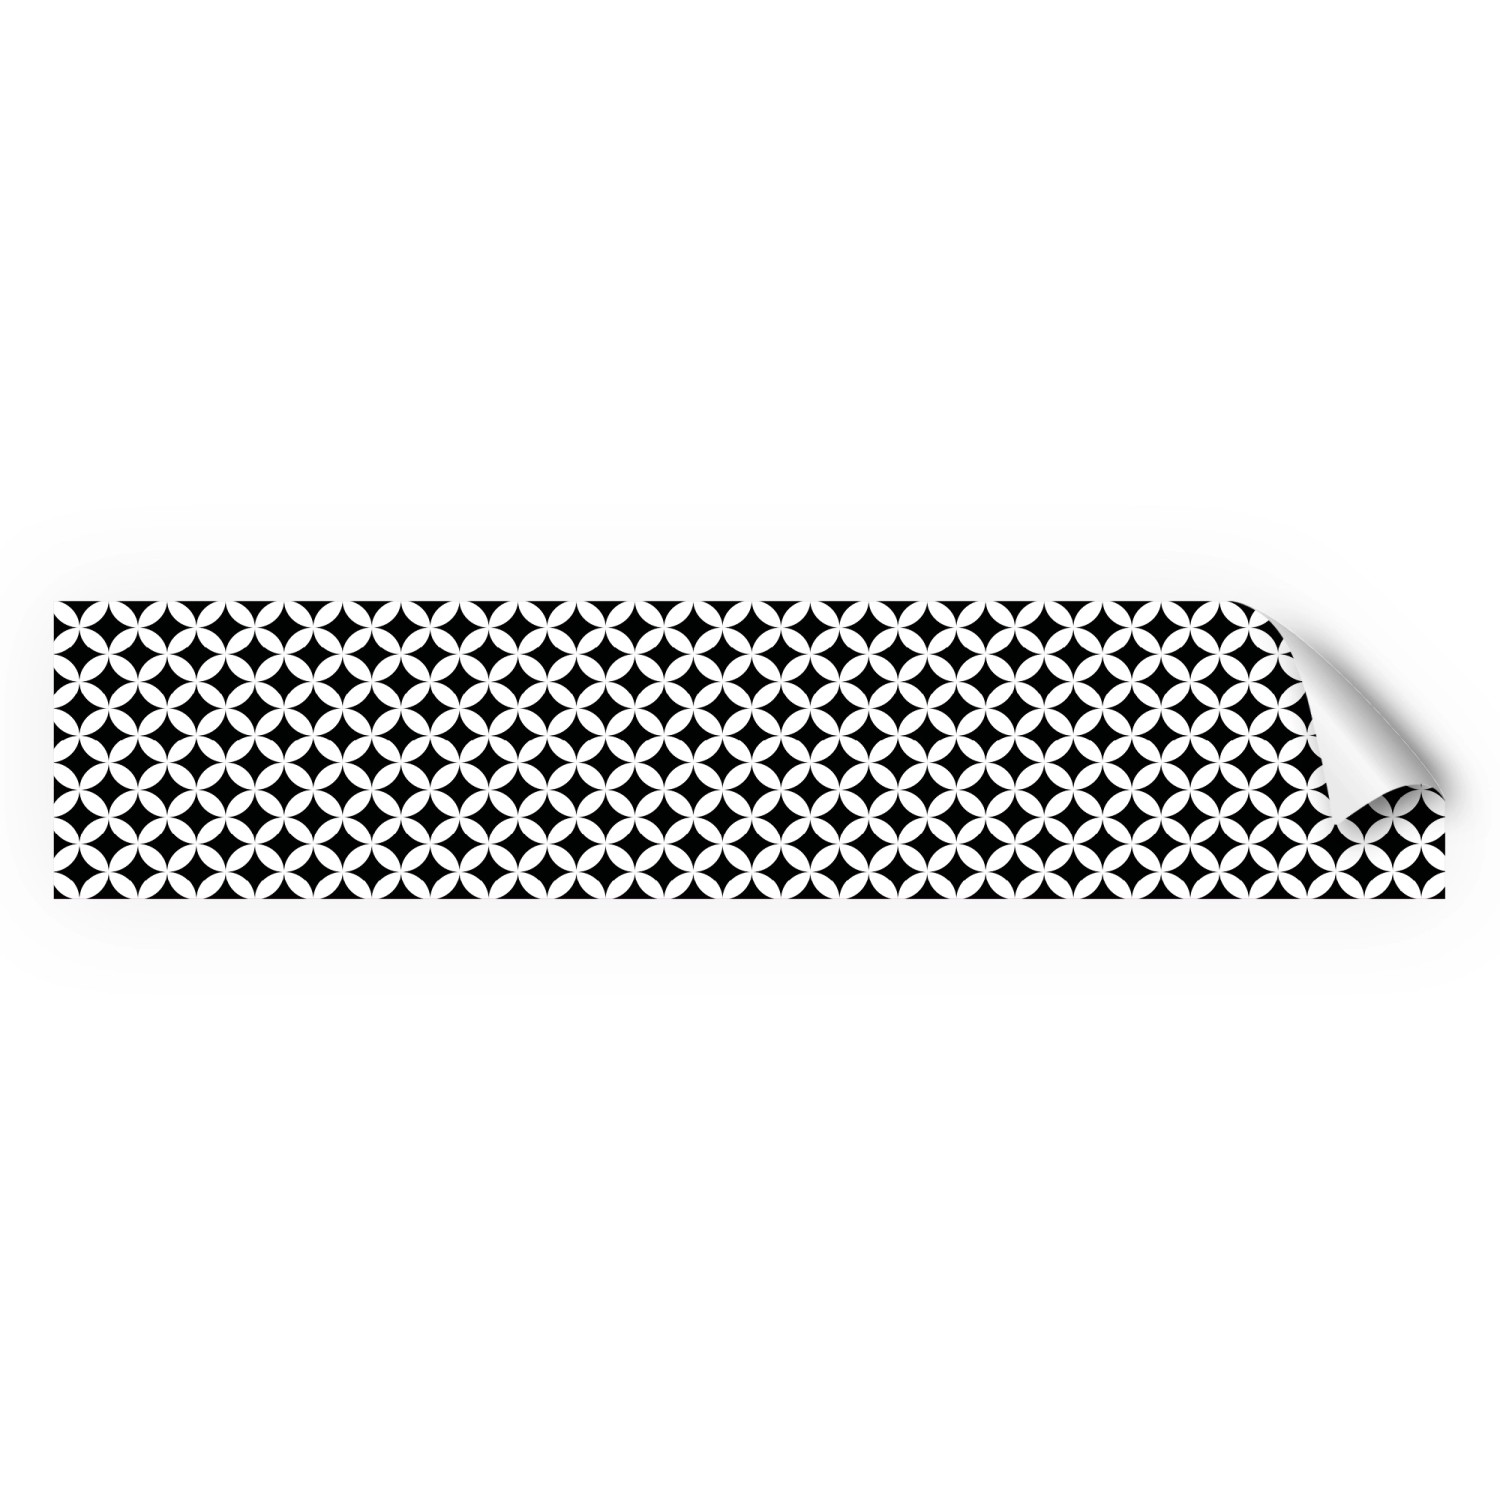 Myspotti Küchenrückwandfolie Chadi Selbstklebend 280 cm x 60 cm Schwarz-Weiß